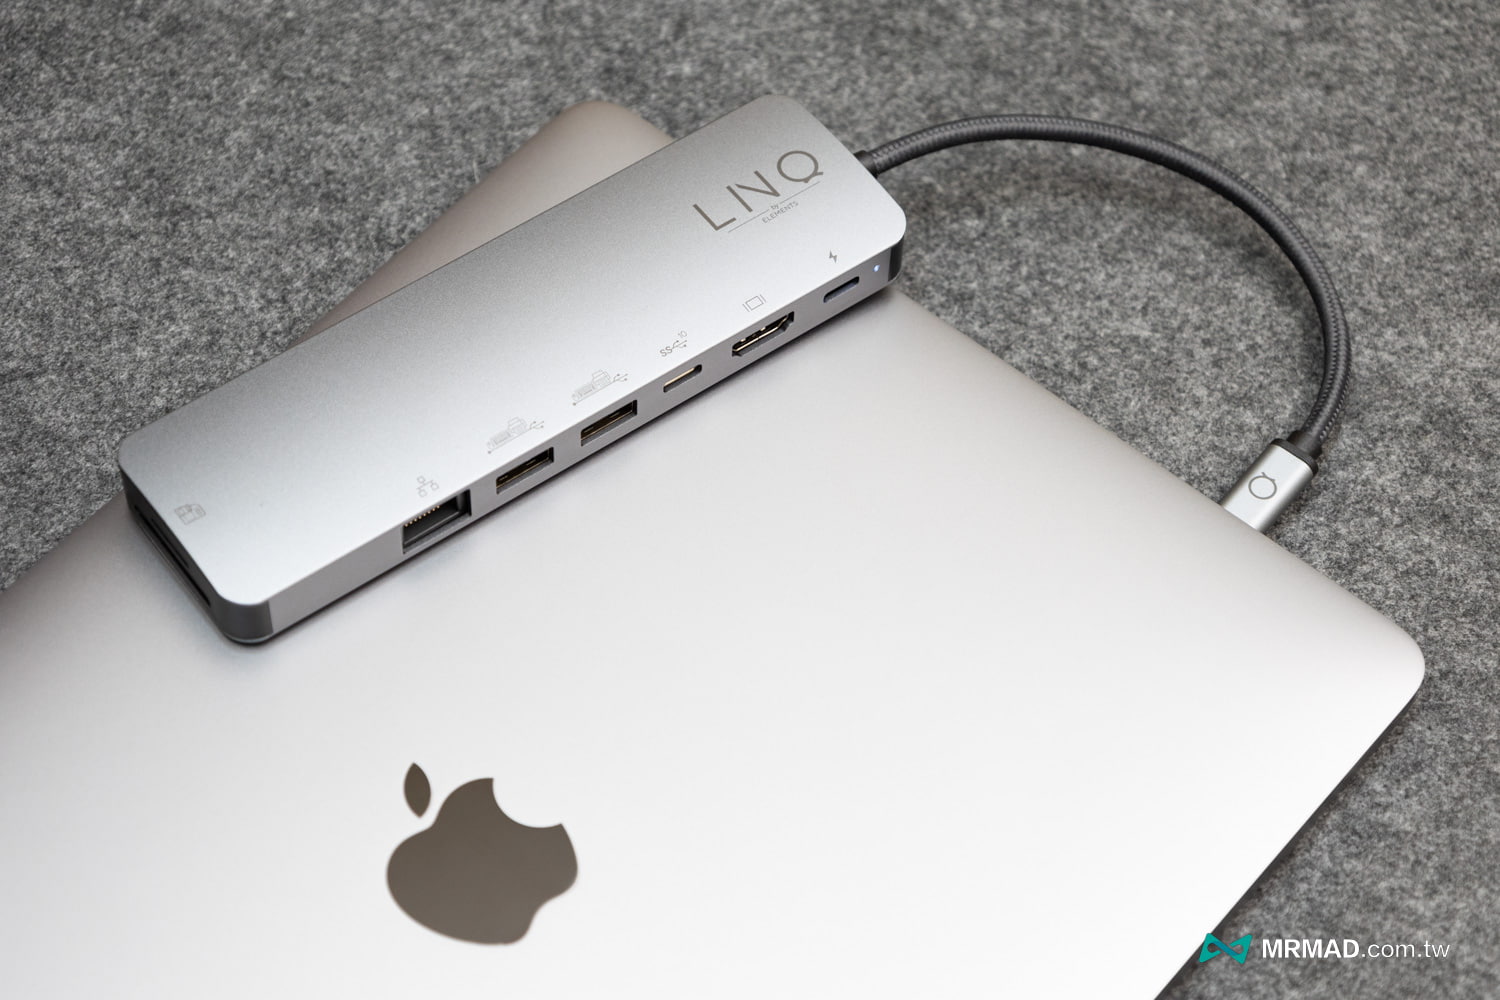 丹麥LINQ 9合1 SSD Pro Studio Hub 集線器開箱12